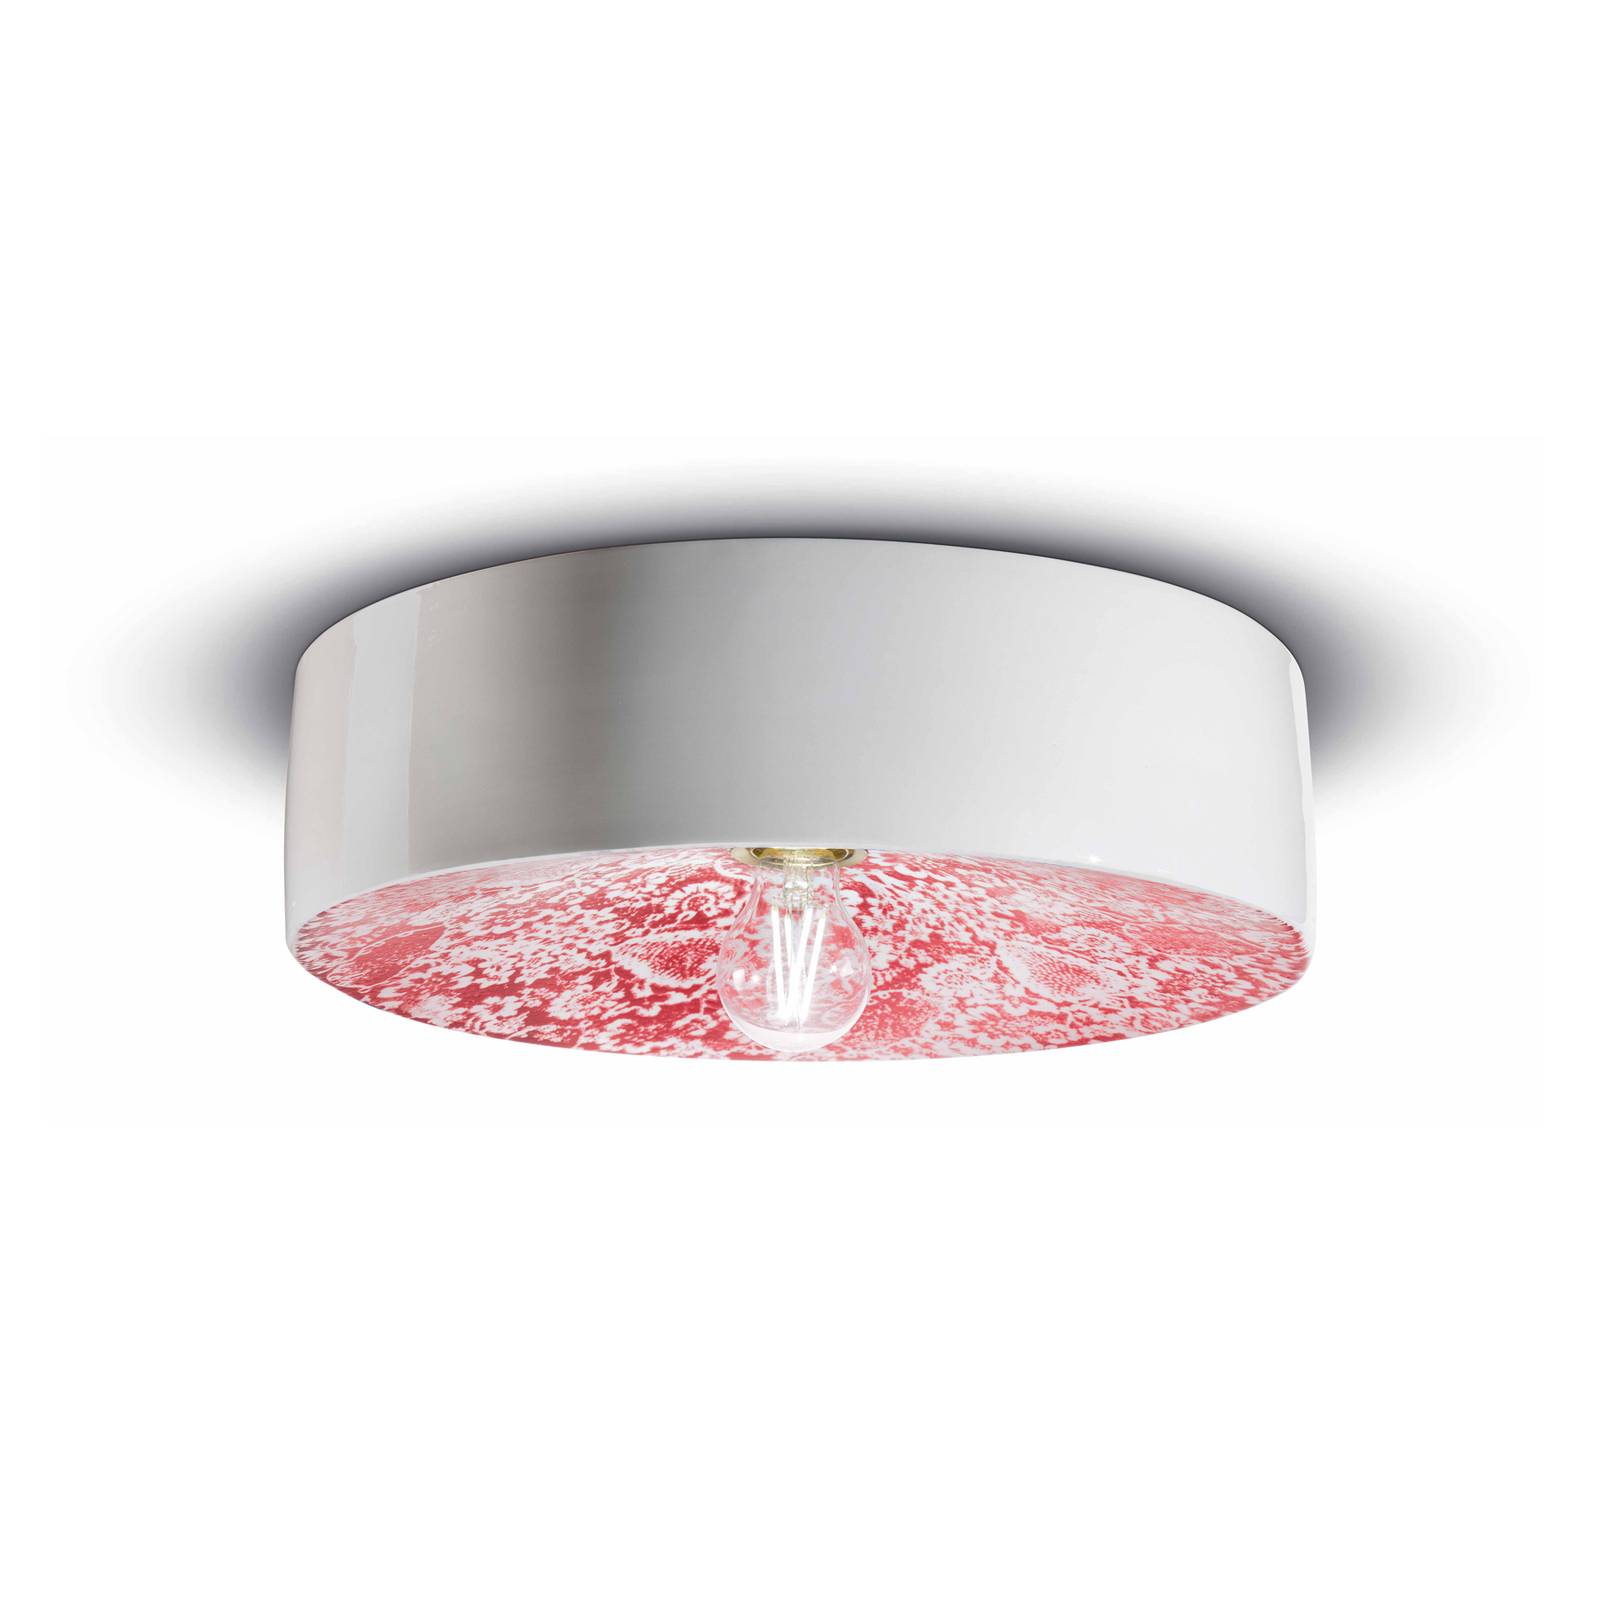 E-shop PI stropné svietidlo, kvetinový vzor Ø 40 cm červená/biela